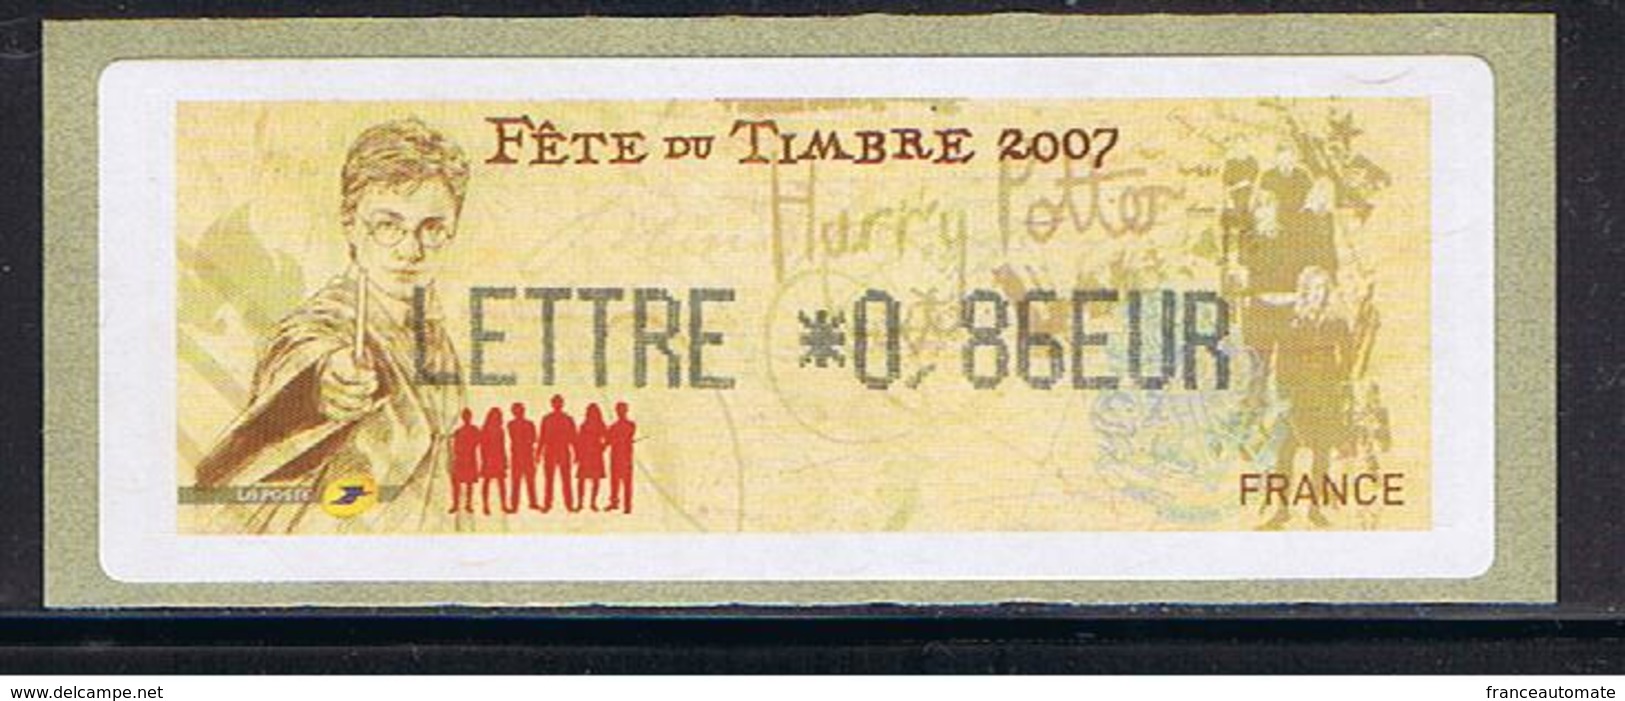 ATM, LISA1, HARRY POTTER, LETTRE 0.86 EUR, 10 Mars 2007, Papier Thermique, De VALBONNE Sur LISA1. JOURNEE DU TIMBRE. - 1999-2009 Illustrated Franking Labels